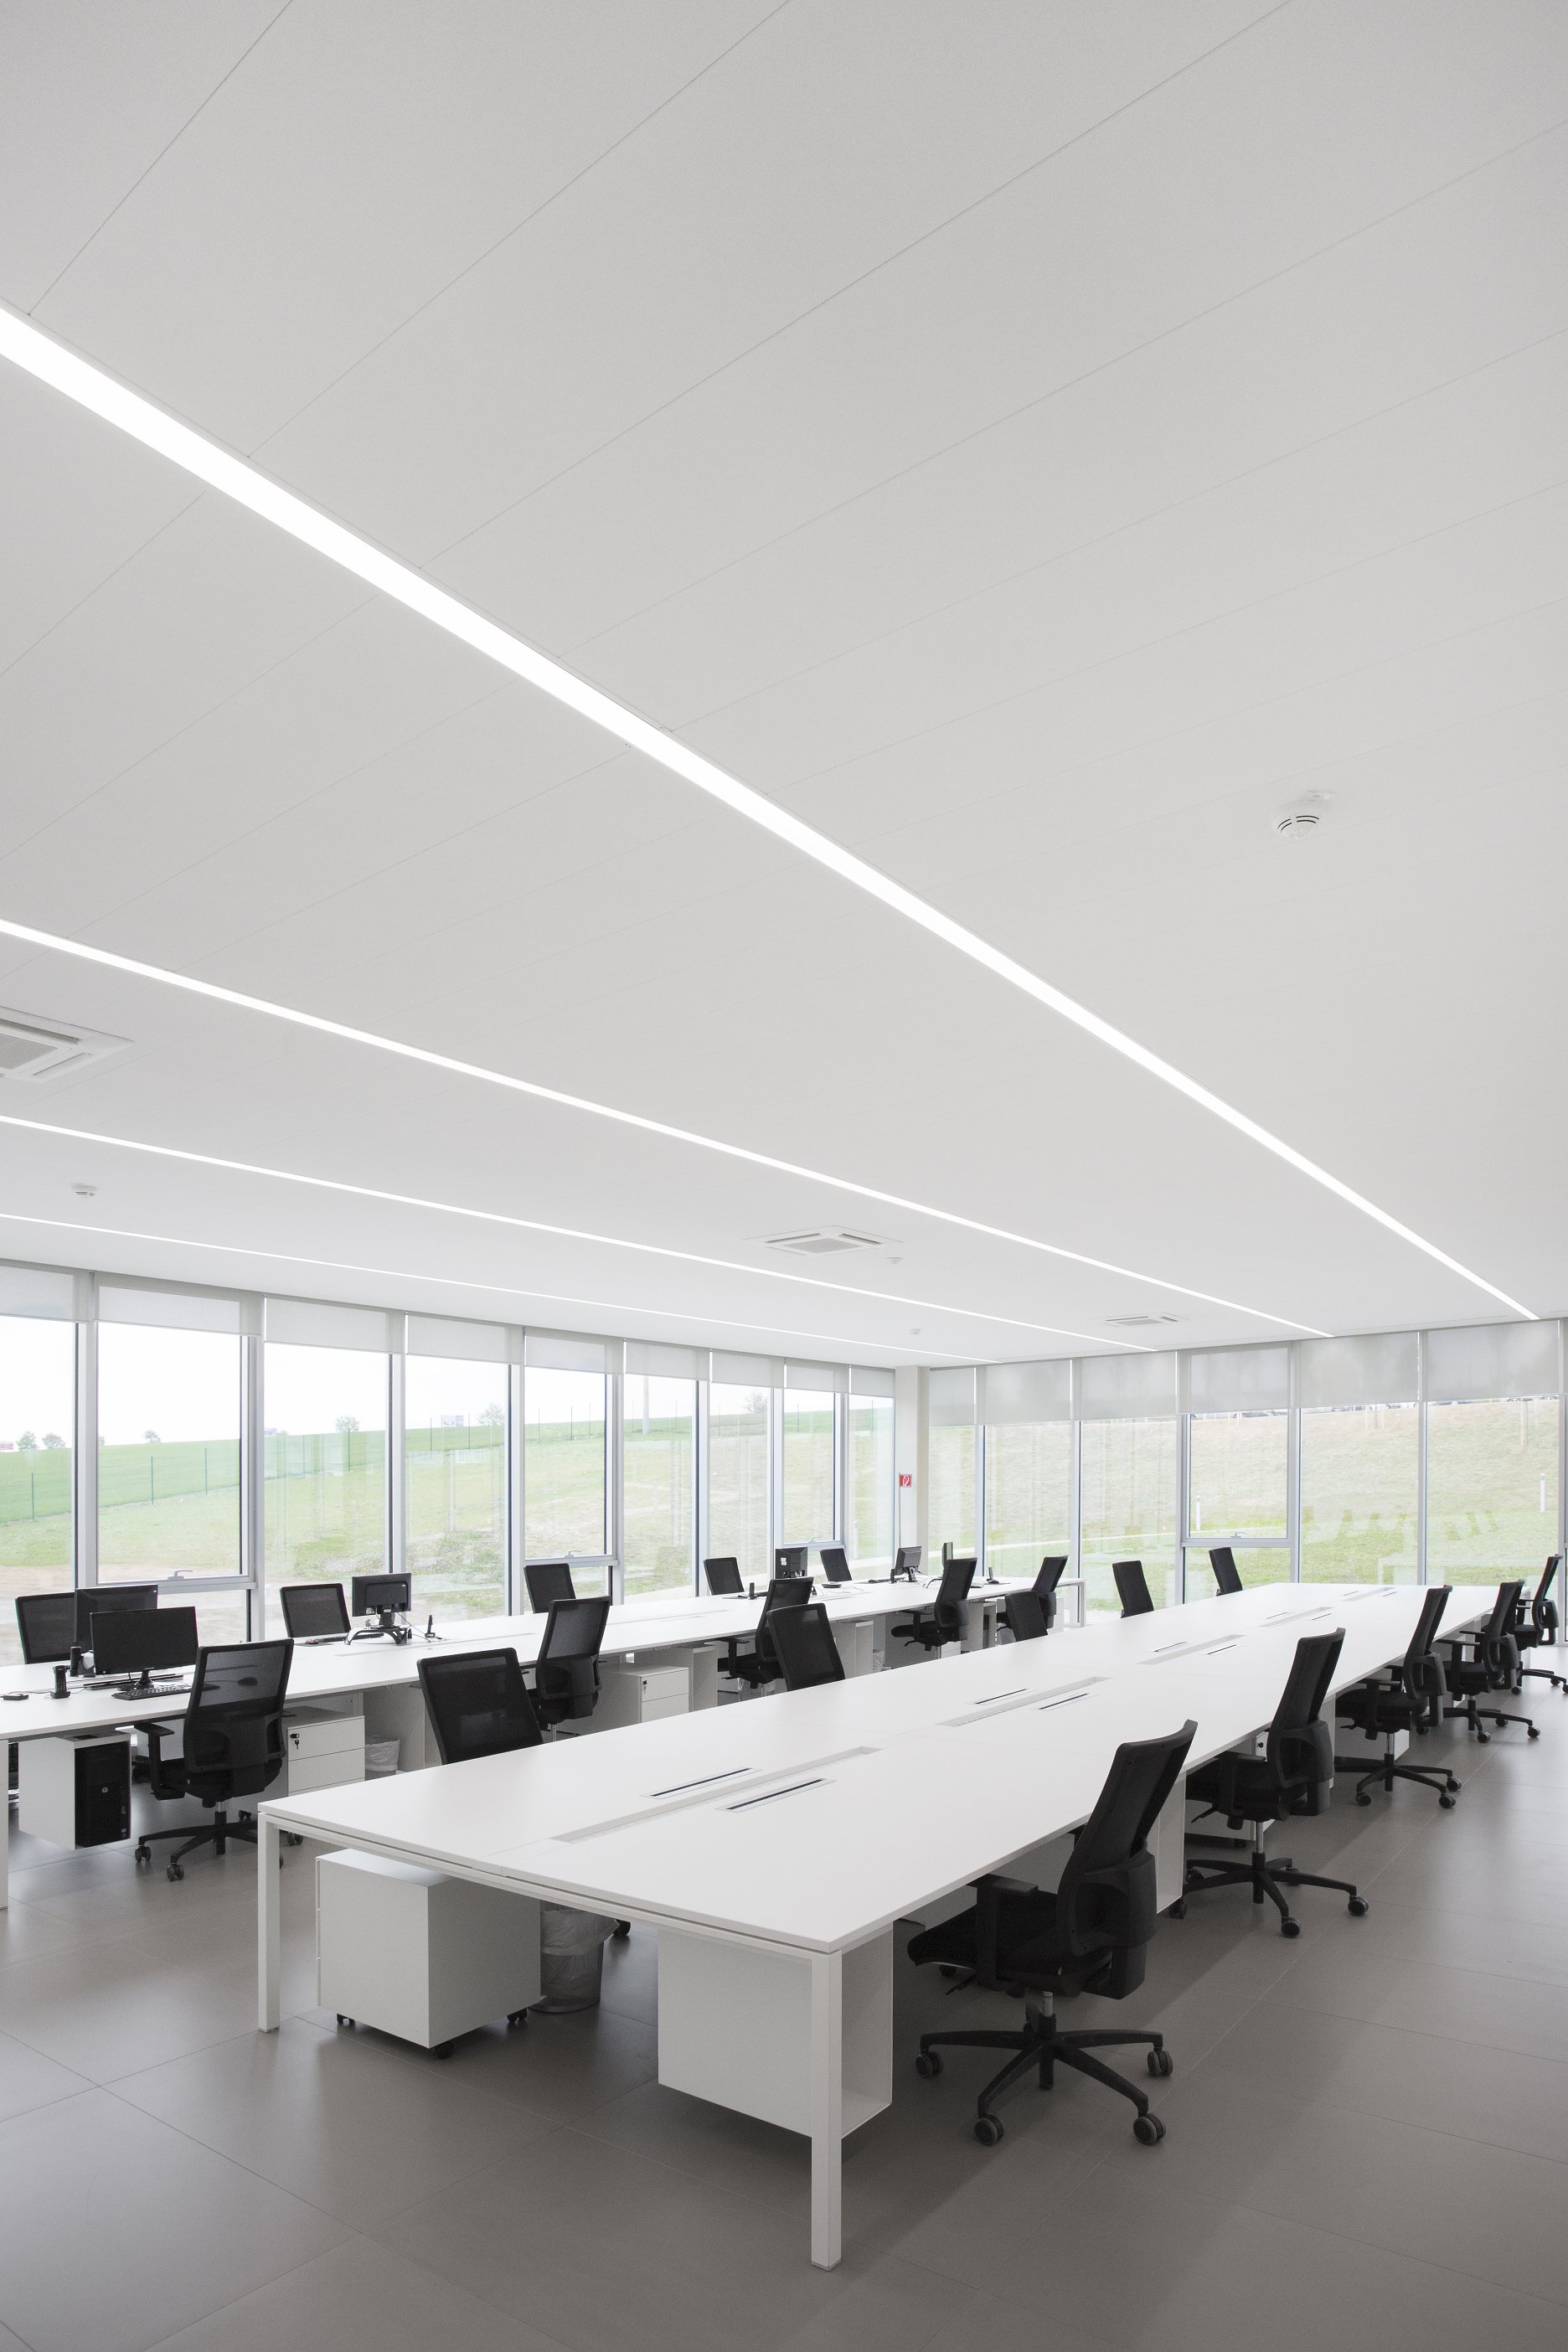 LED svietidlá XAL Leno určené pre stropné konštrukcie je možné vďaka integrovanému systému inštalovať zospodu bez potreby zásahu do existujúceho stropu; zdroj: Armstrong. 